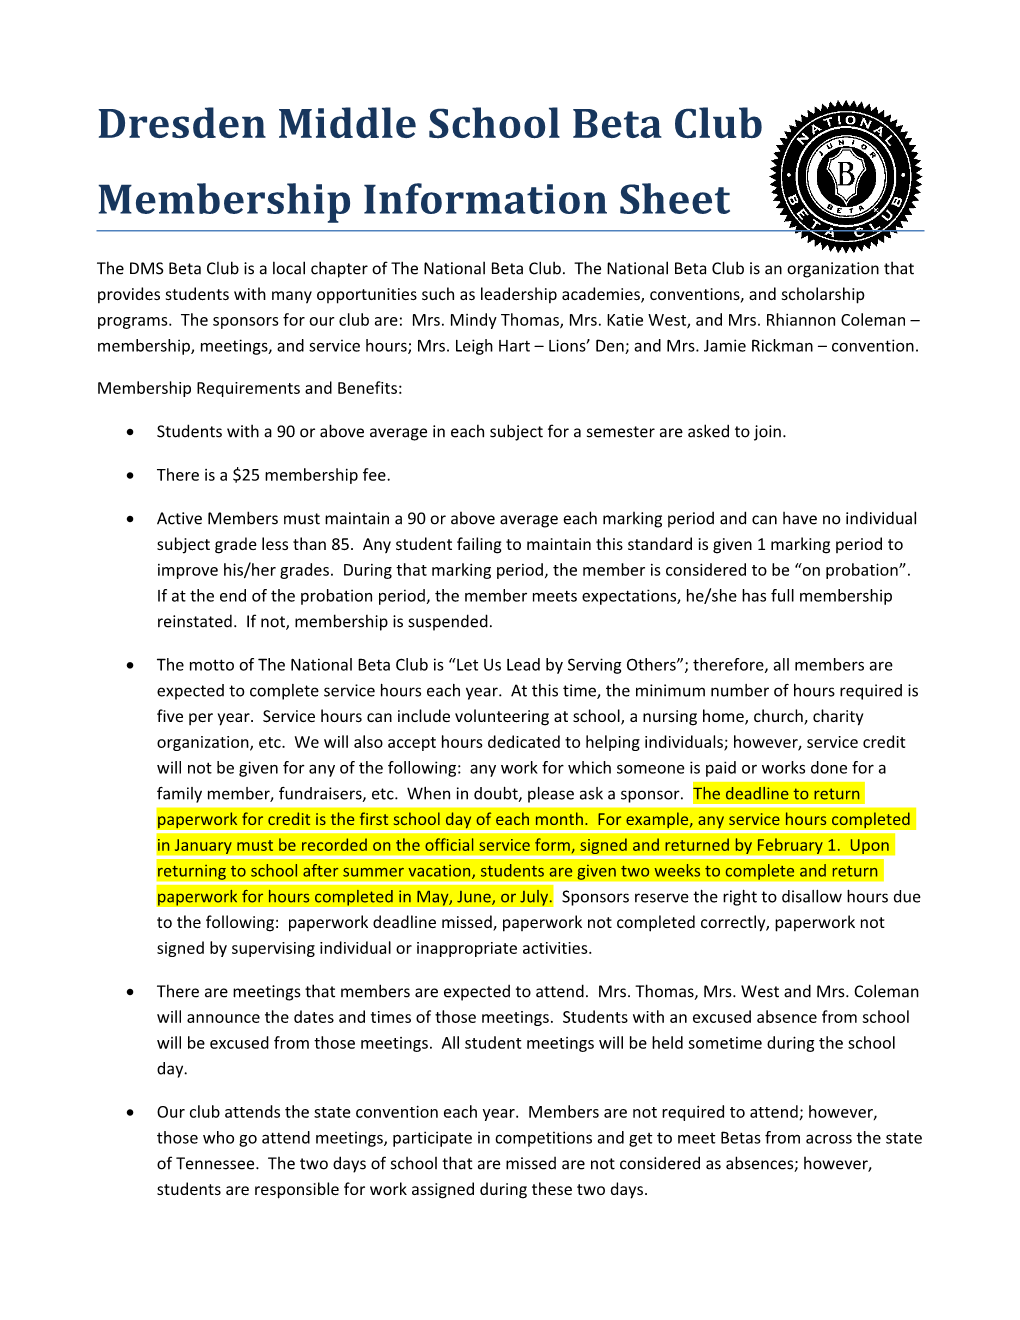 Membership Information Sheet